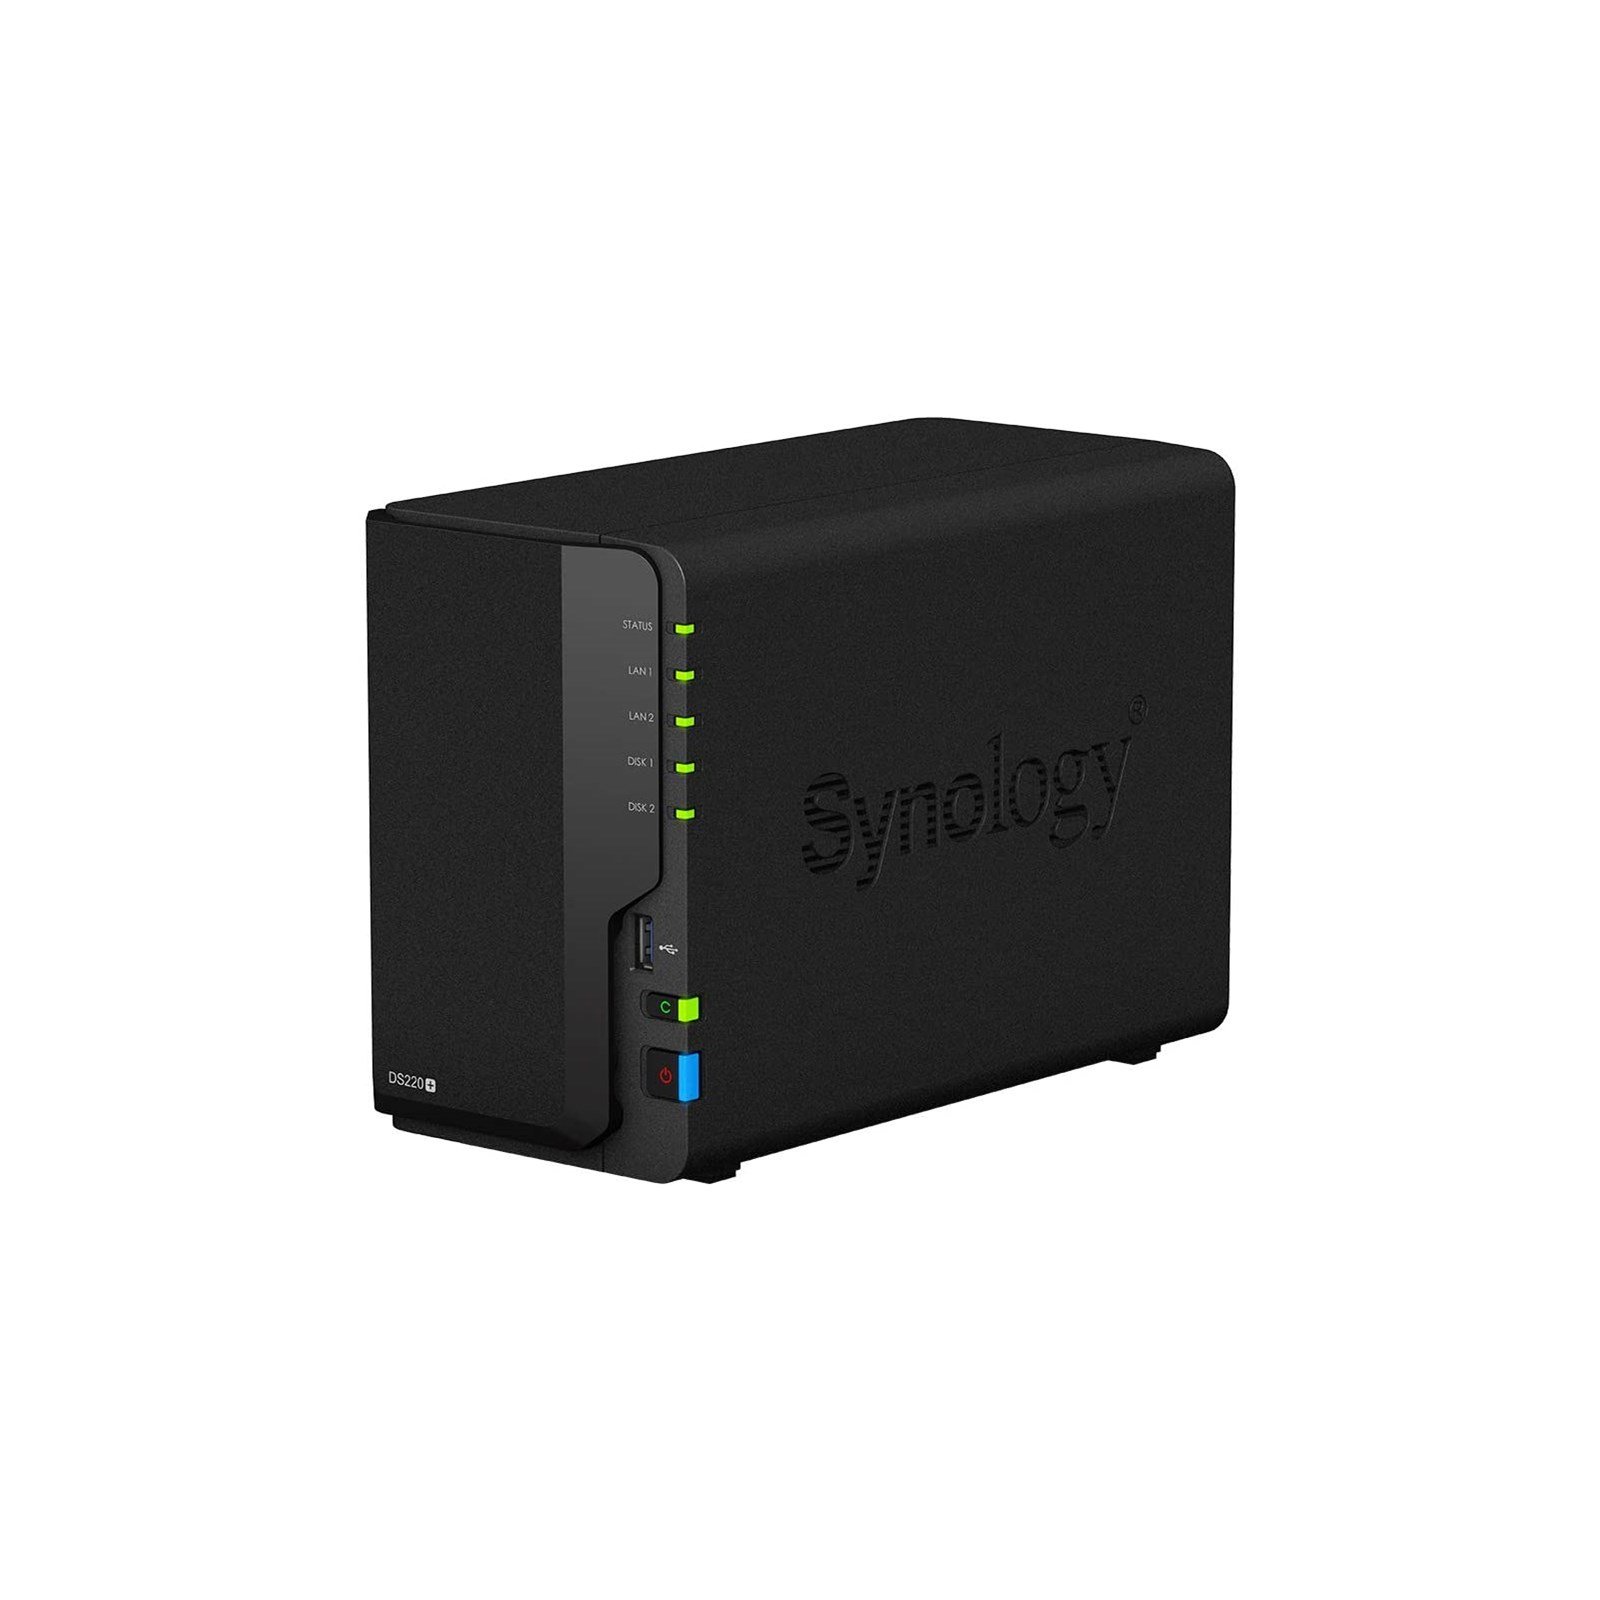 Synology DiskStation DS220+ 2-Bay NAS Enclosure, Black 